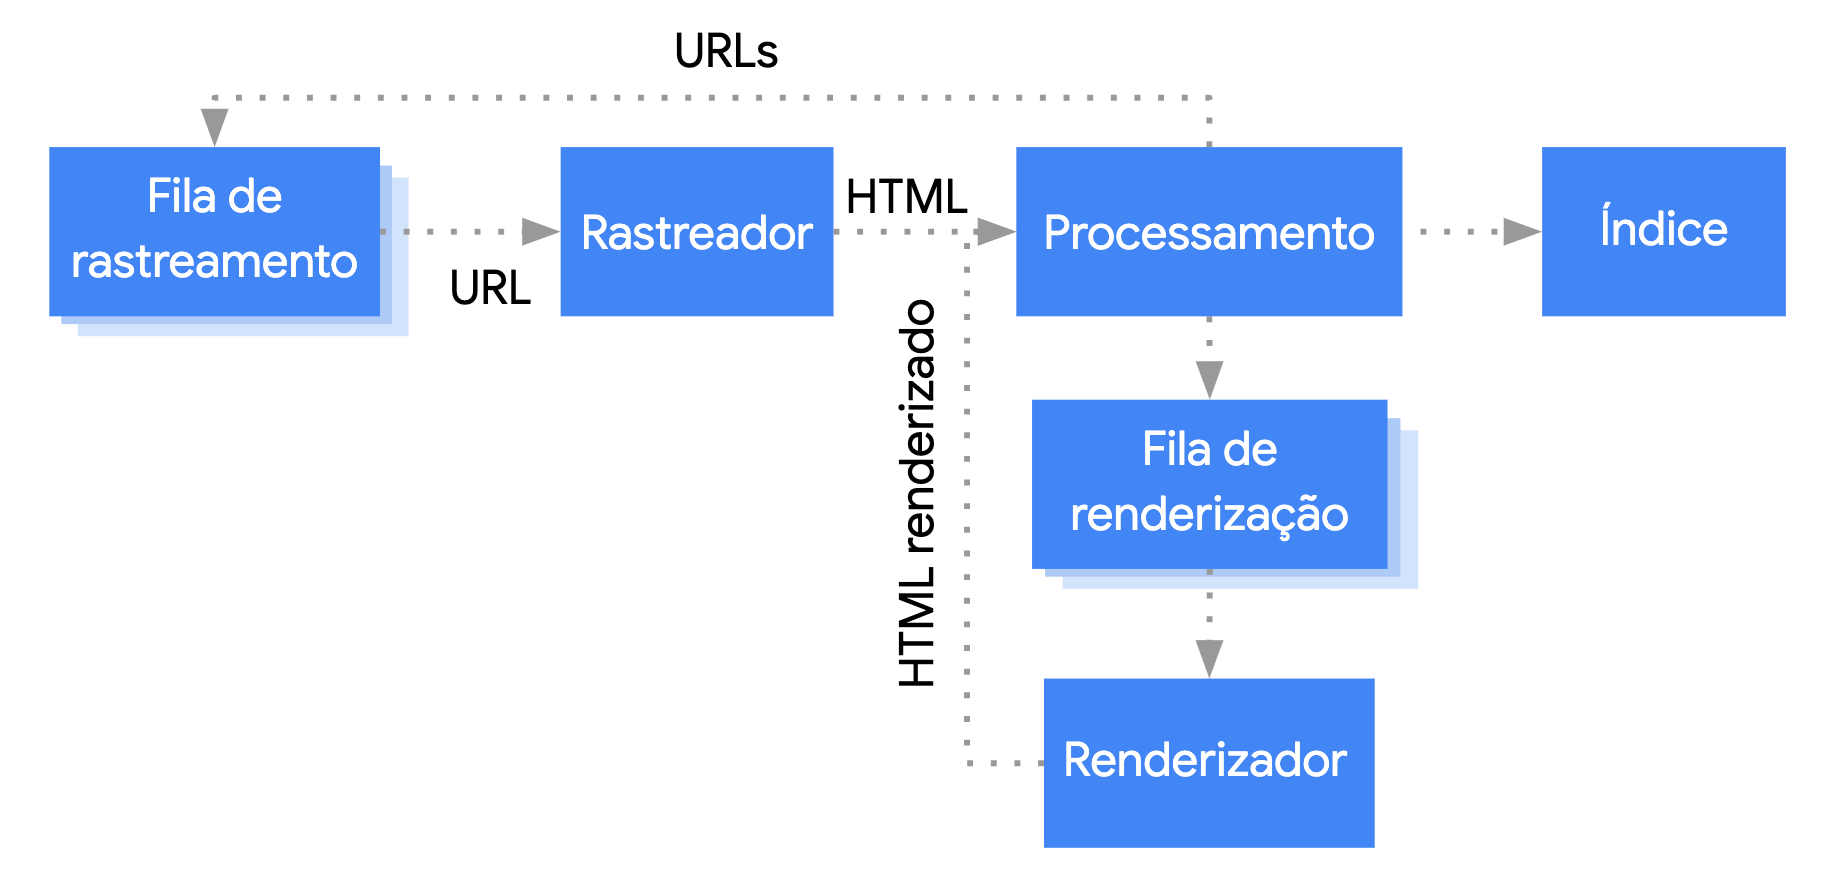 O Google pega um URL da fila de rastreamento, o rastreia e o passa para a etapa de processamento. A etapa de processamento extrai os links, que
       voltam à fila de rastreamento, e coloca a página na fila de renderização. A página vai da fila para o renderizador, que devolve o HTML renderizado para o processamento. Então o conteúdo é indexado, e os links são extraídos e adicionados à fila de rastreamento.